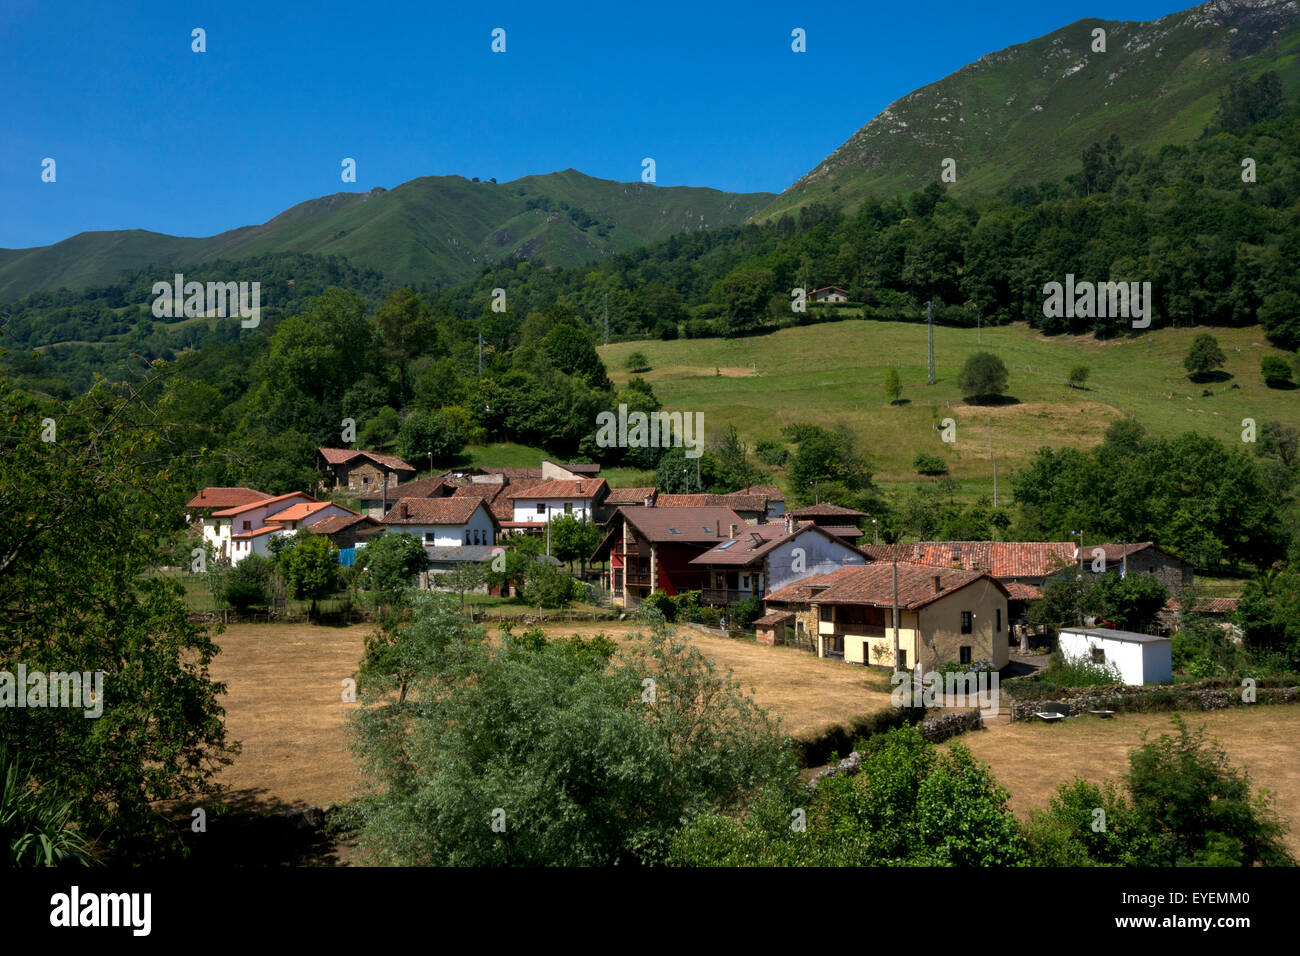 Village rural typique de Espinaredo dans les Asturies, le nord de l'Espagne Banque D'Images